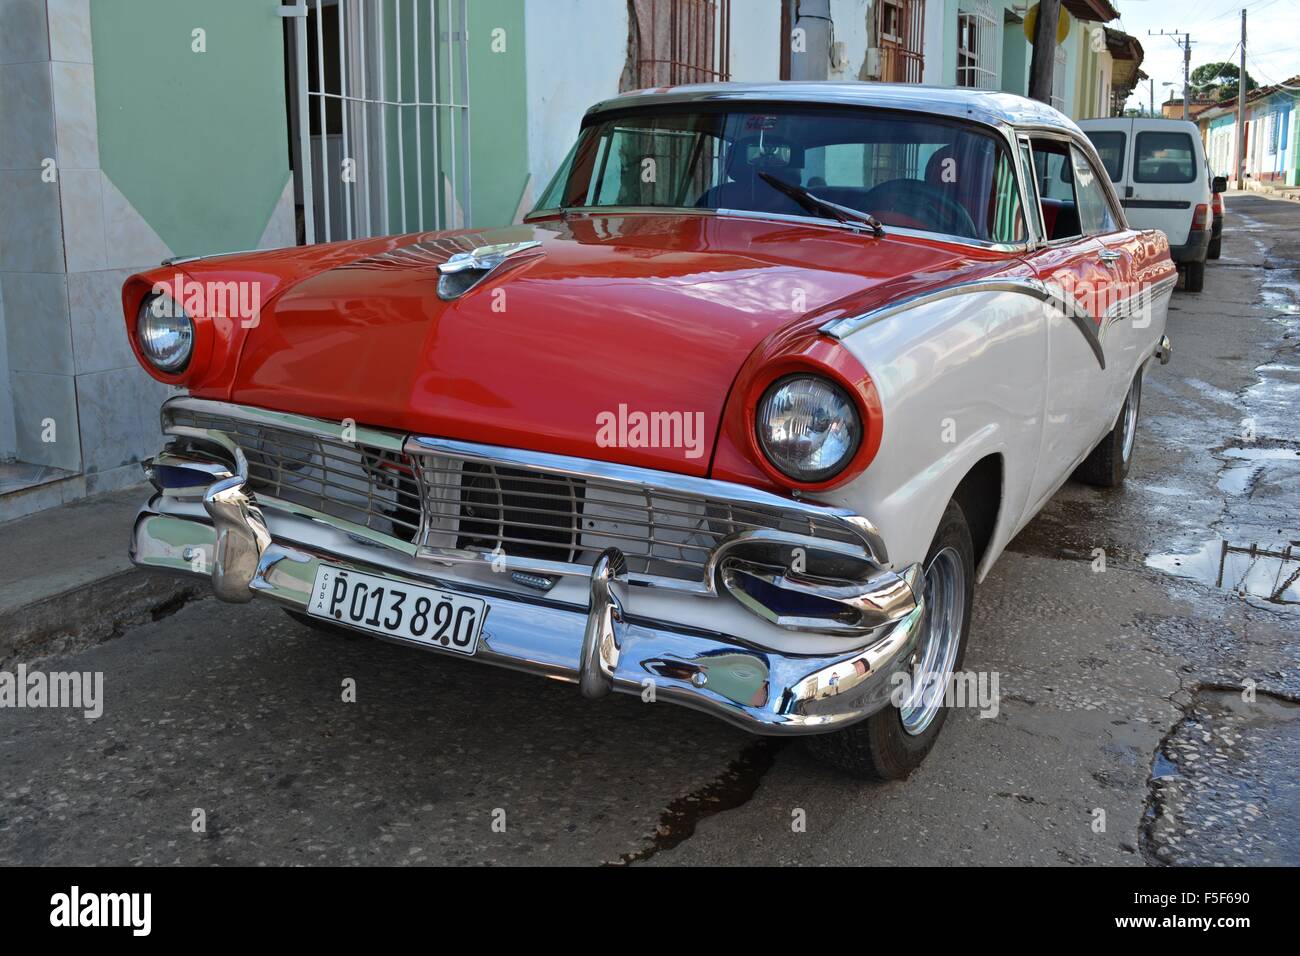 Vintage di colore rosso e bianco Ford auto parcheggiate su di una tranquilla strada ombreggiata in Trinidad, Cuba Foto Stock